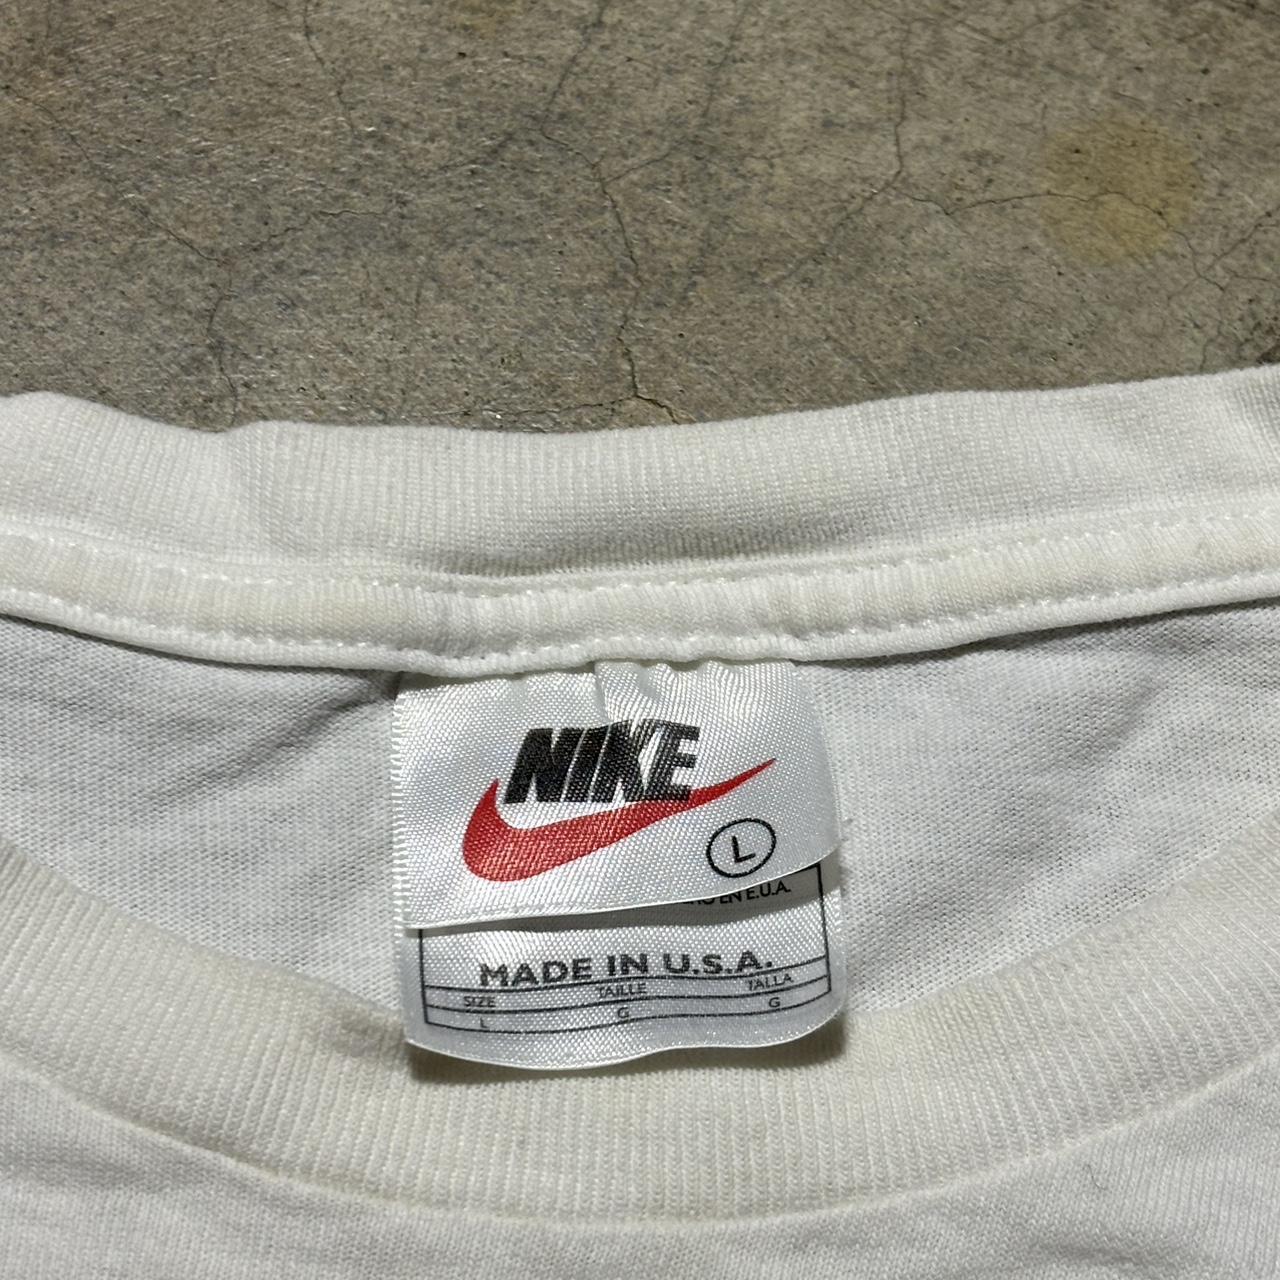 Vintage Nike Tiger Woods Shirt kids size L, Men’s... - Depop